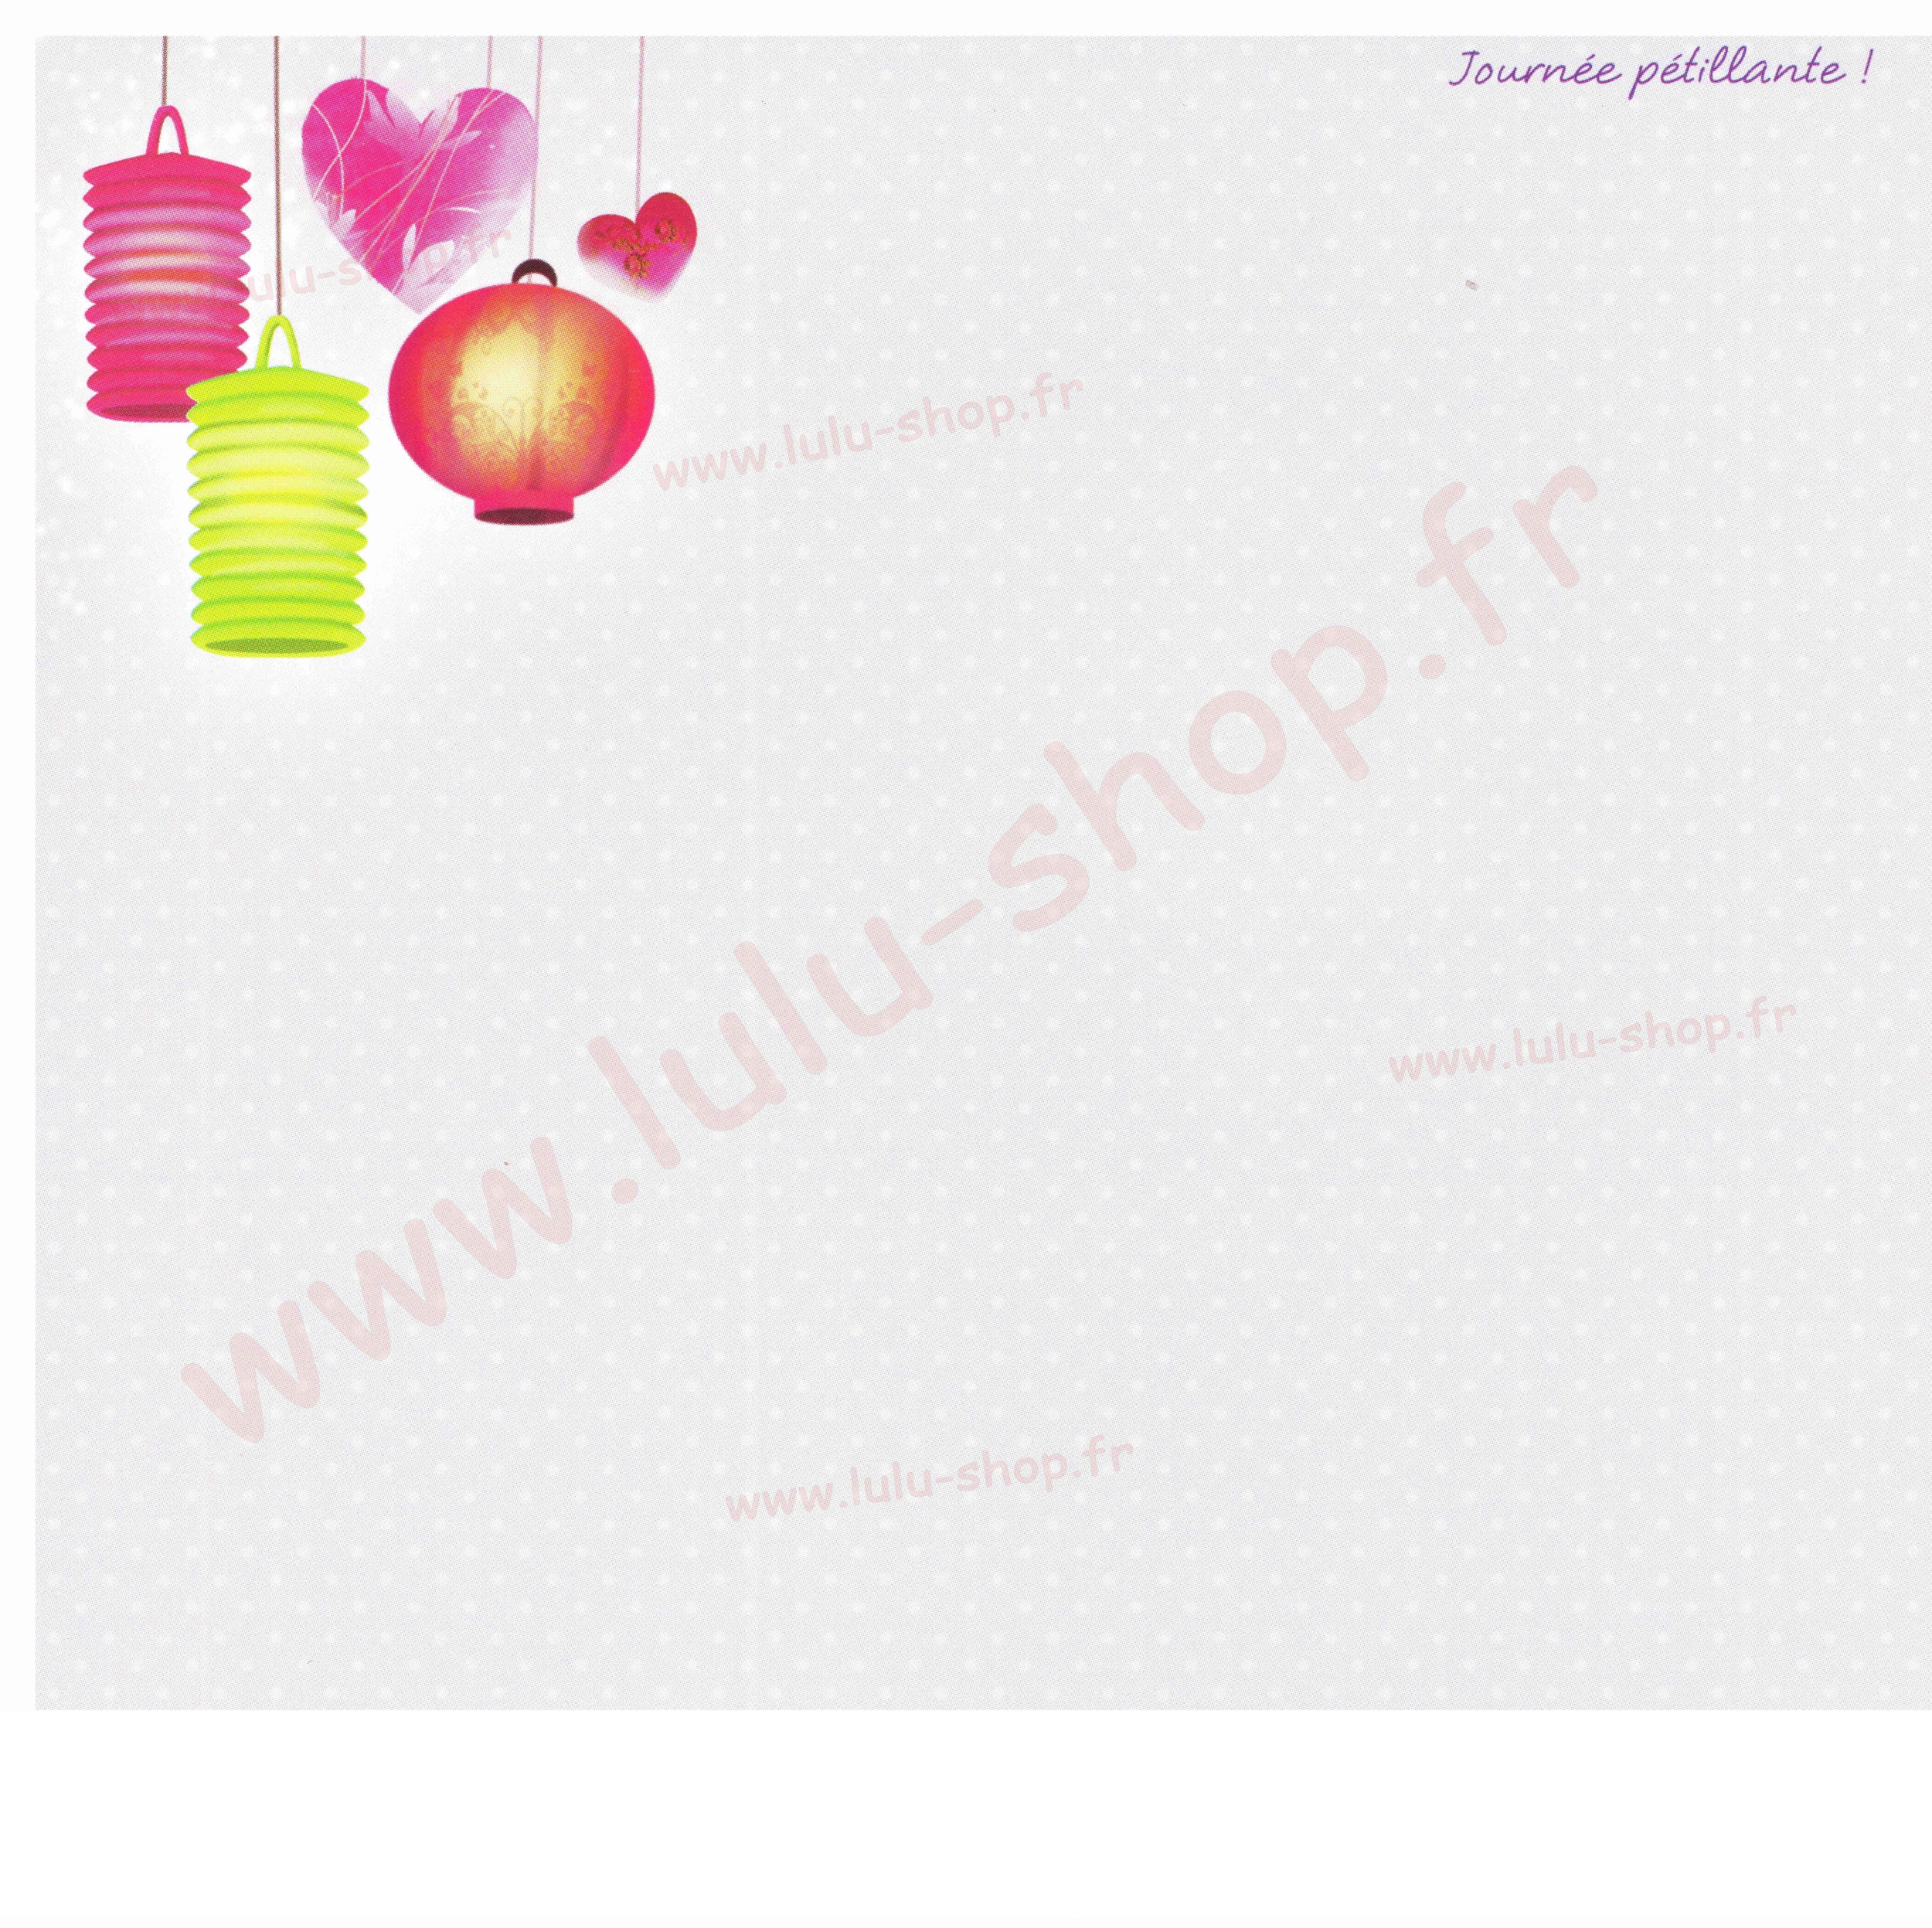 www.lulu-shop.fr carte postale Journée Pétillante !